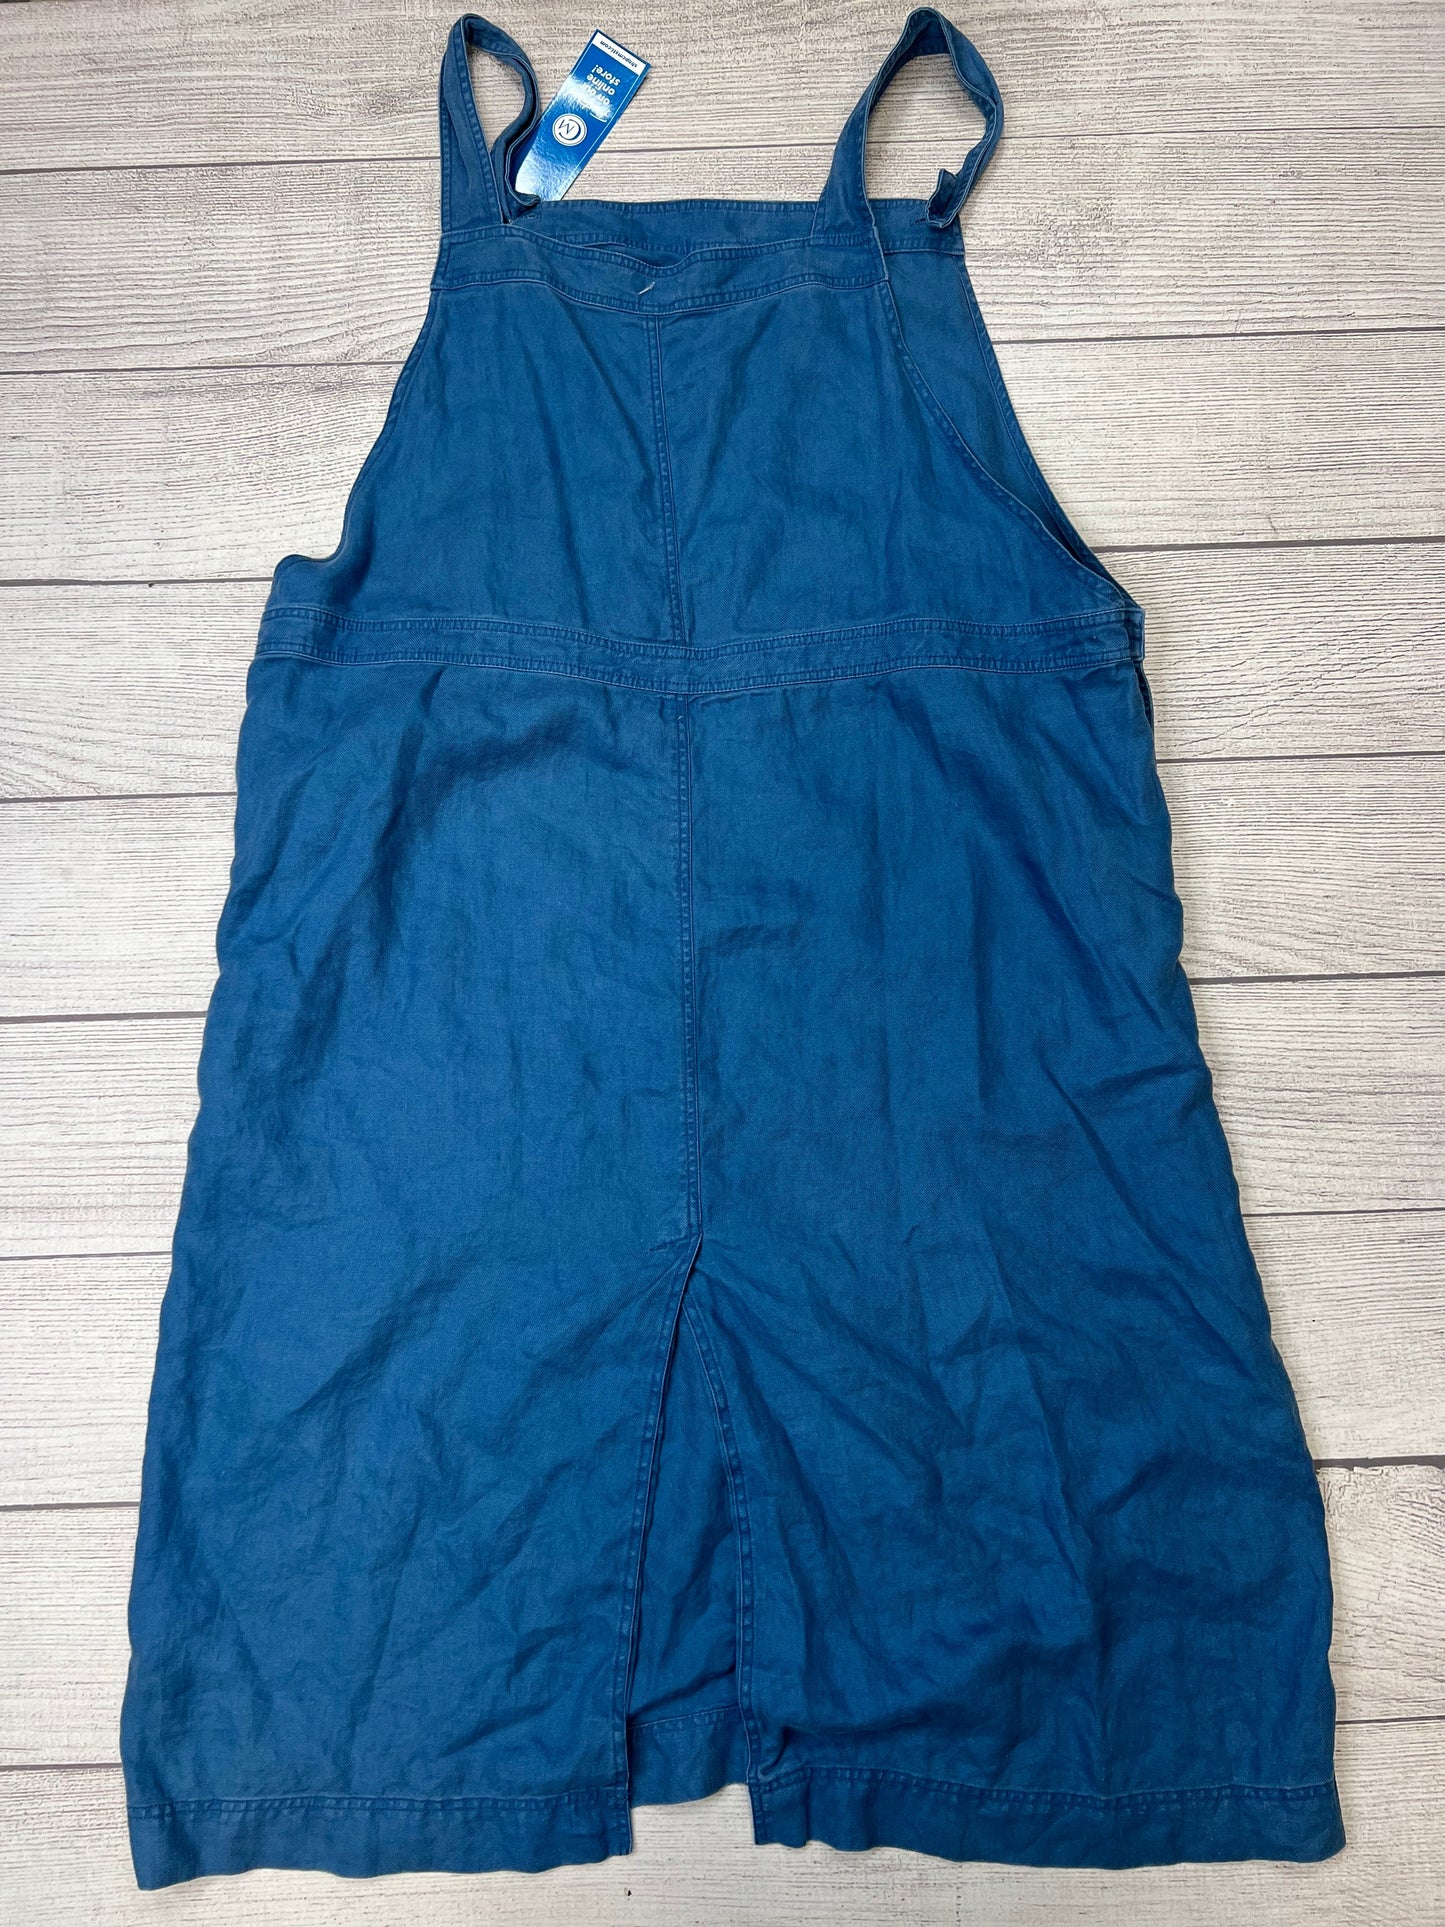 Blue Dress Casual Midi J Jill, Size 4x